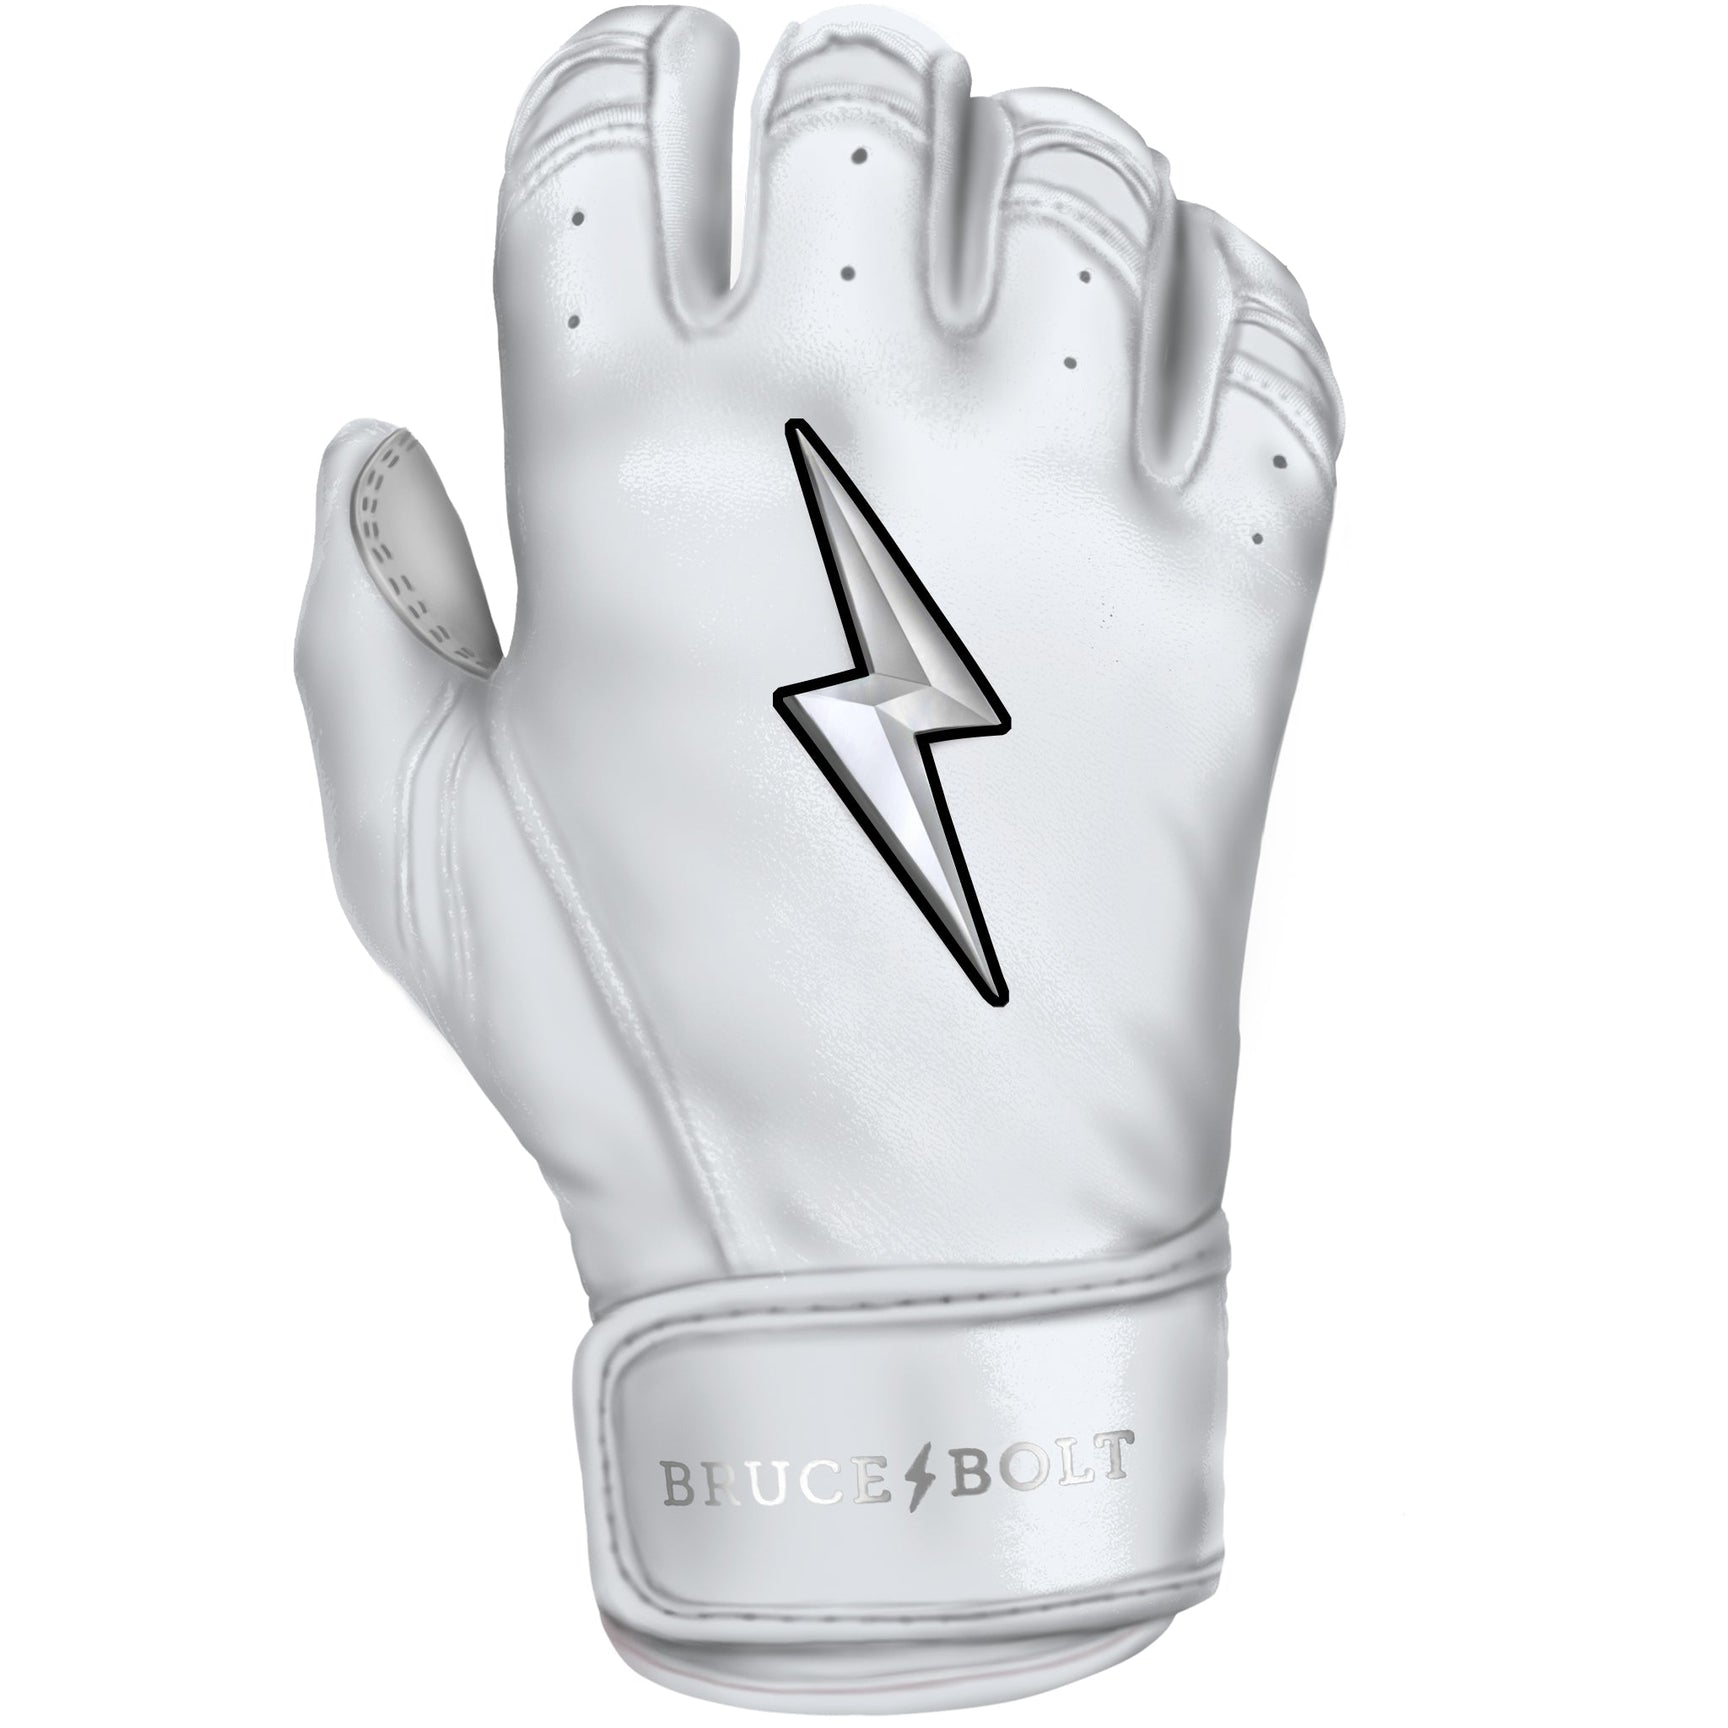 Bruce Bolt Youth Premium Pro Chrome Short Cuff Batting Gloves White